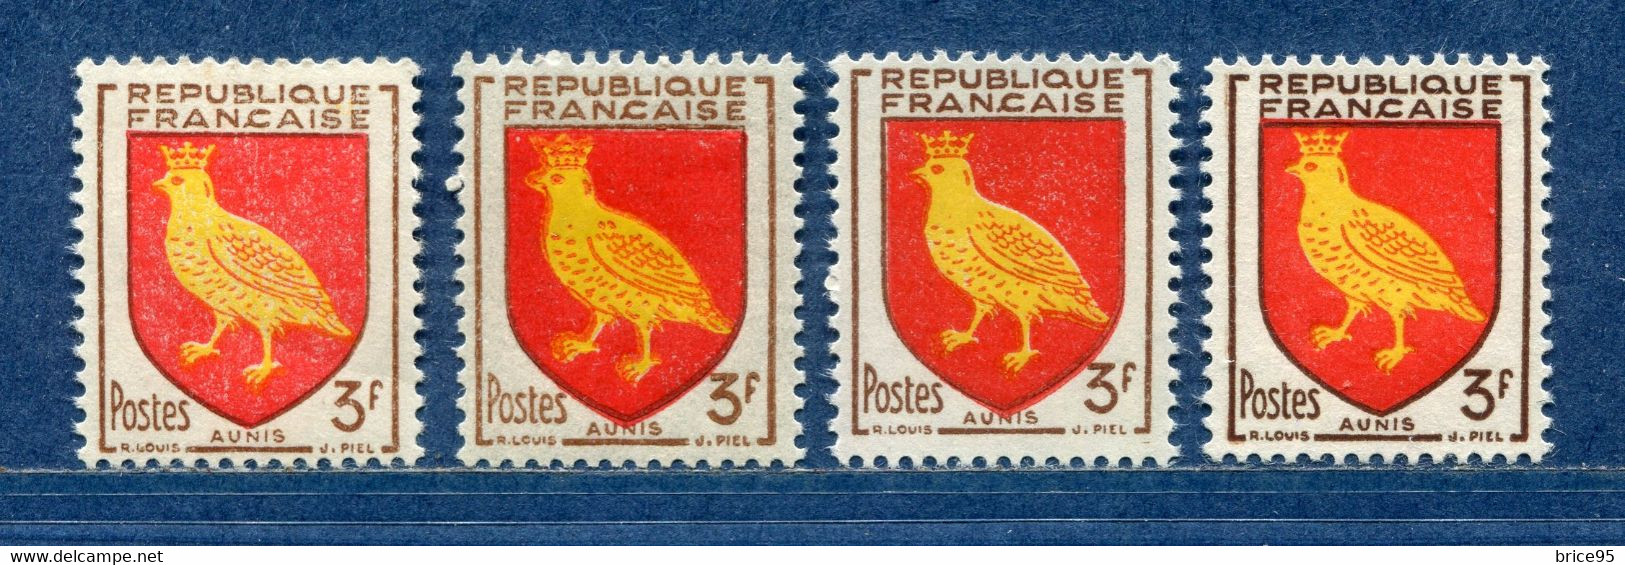 ⭐ France - Variété - YT N° 1004 - Couleurs - Pétouilles - Neuf Sans Charnière - 1954 ⭐ - Neufs